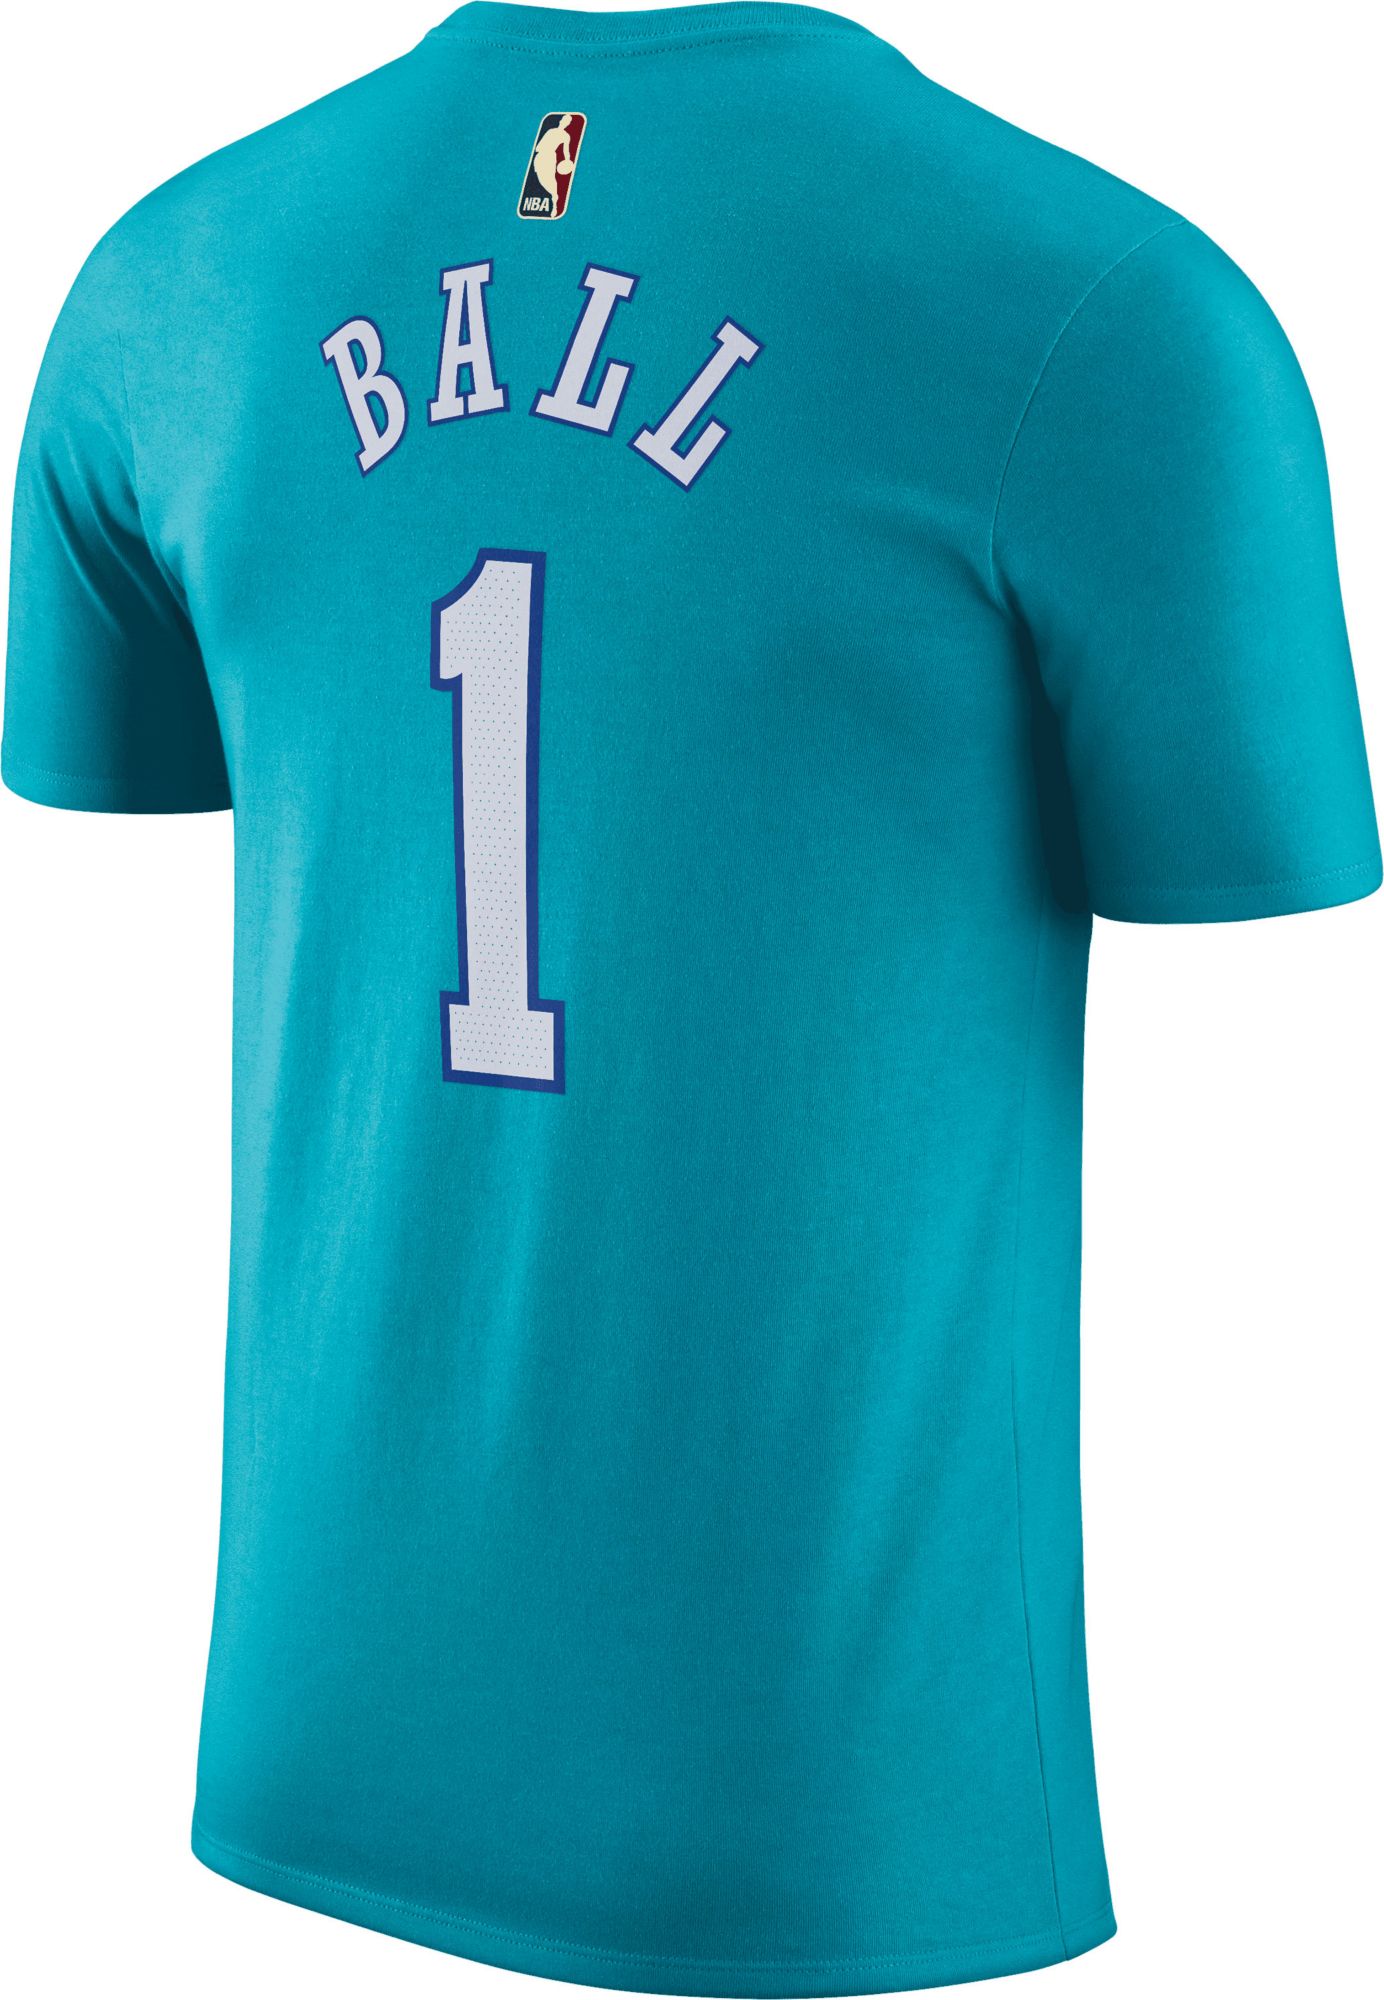 Nike Men's Charlotte Hornets LaMelo Ball #2 Hardwood Classic T-Shirt